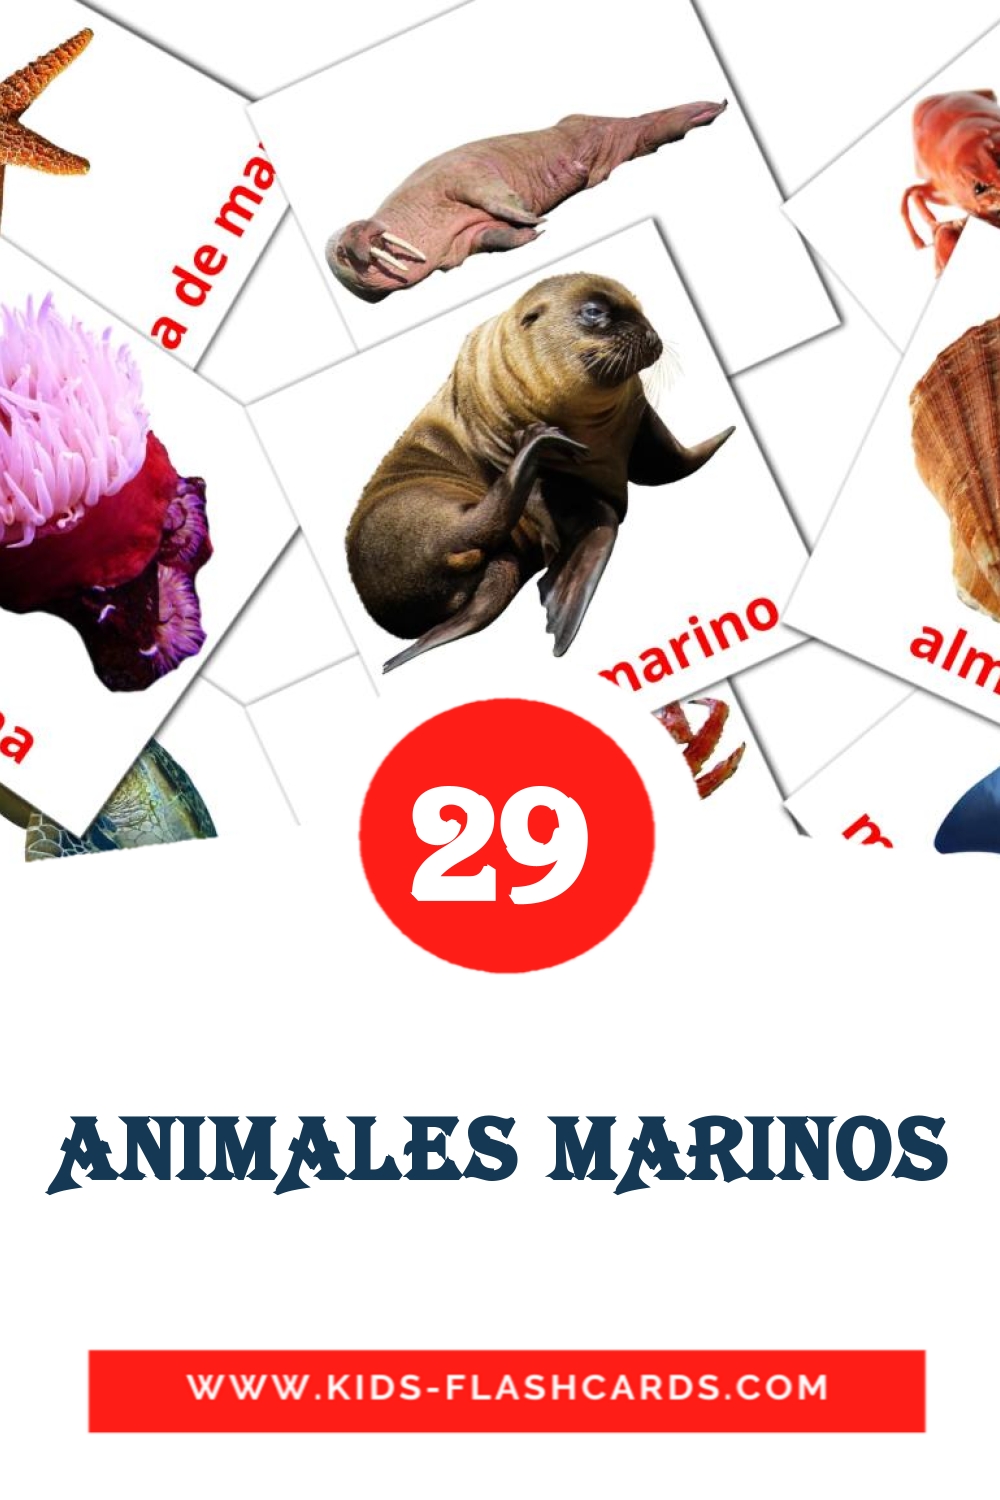 29 carte illustrate di ANIMALES MARINOS per la scuola materna in amárica